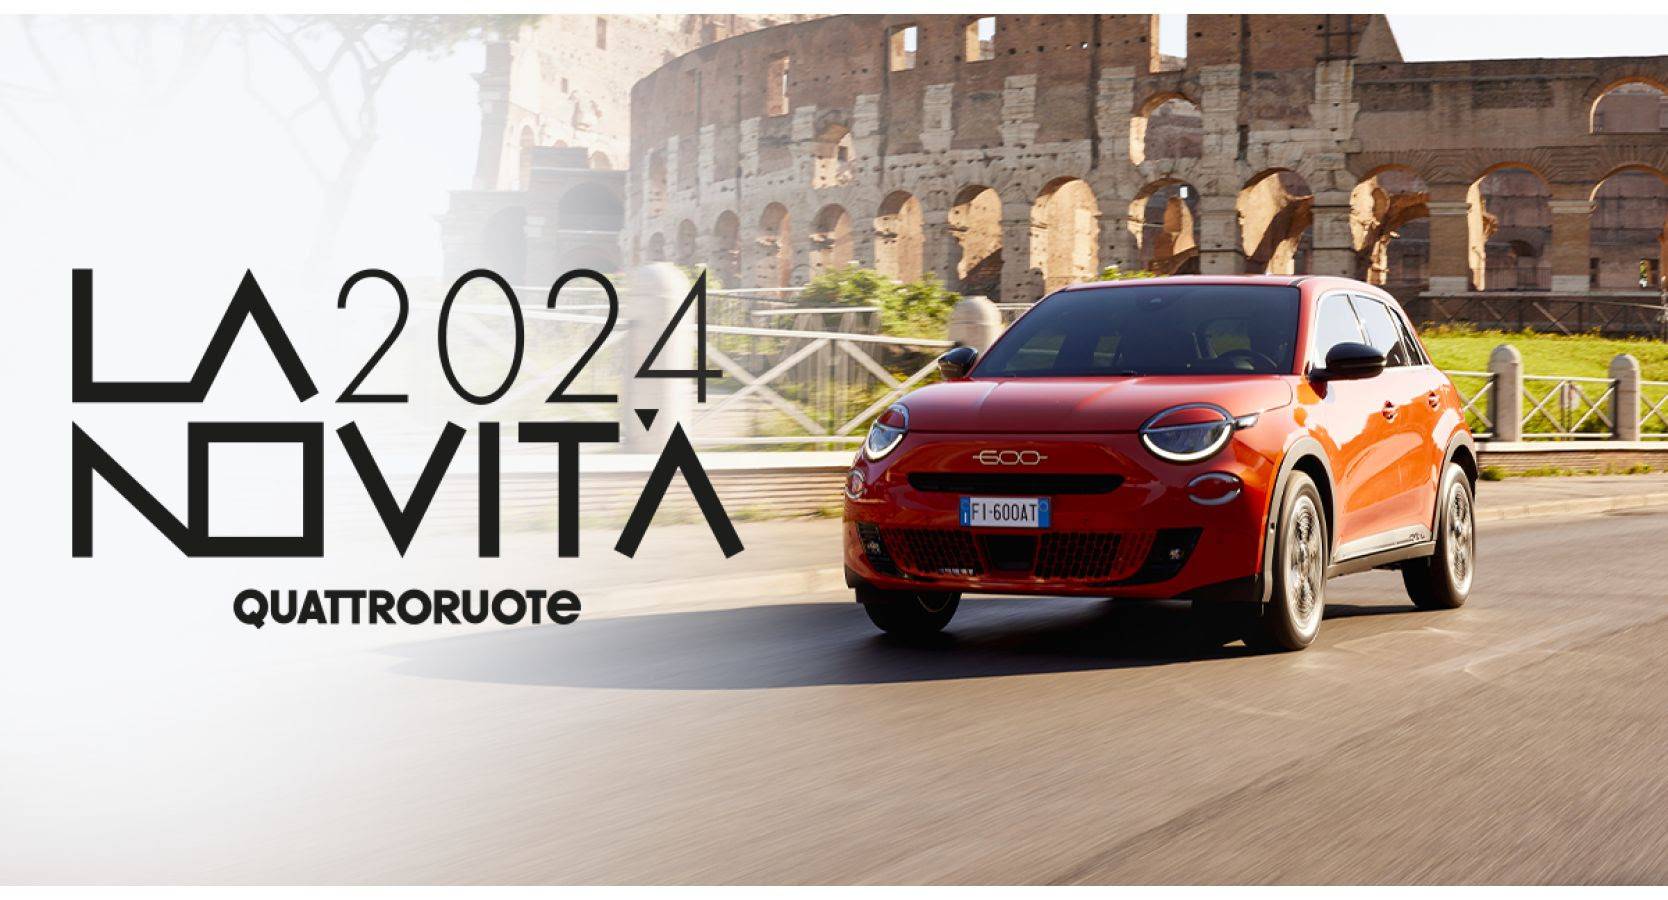 Gli italiani amano la nuova Fiat 600e: premiata come “La Novità 2024” dalla giuria popolare della rivista Quattroruote